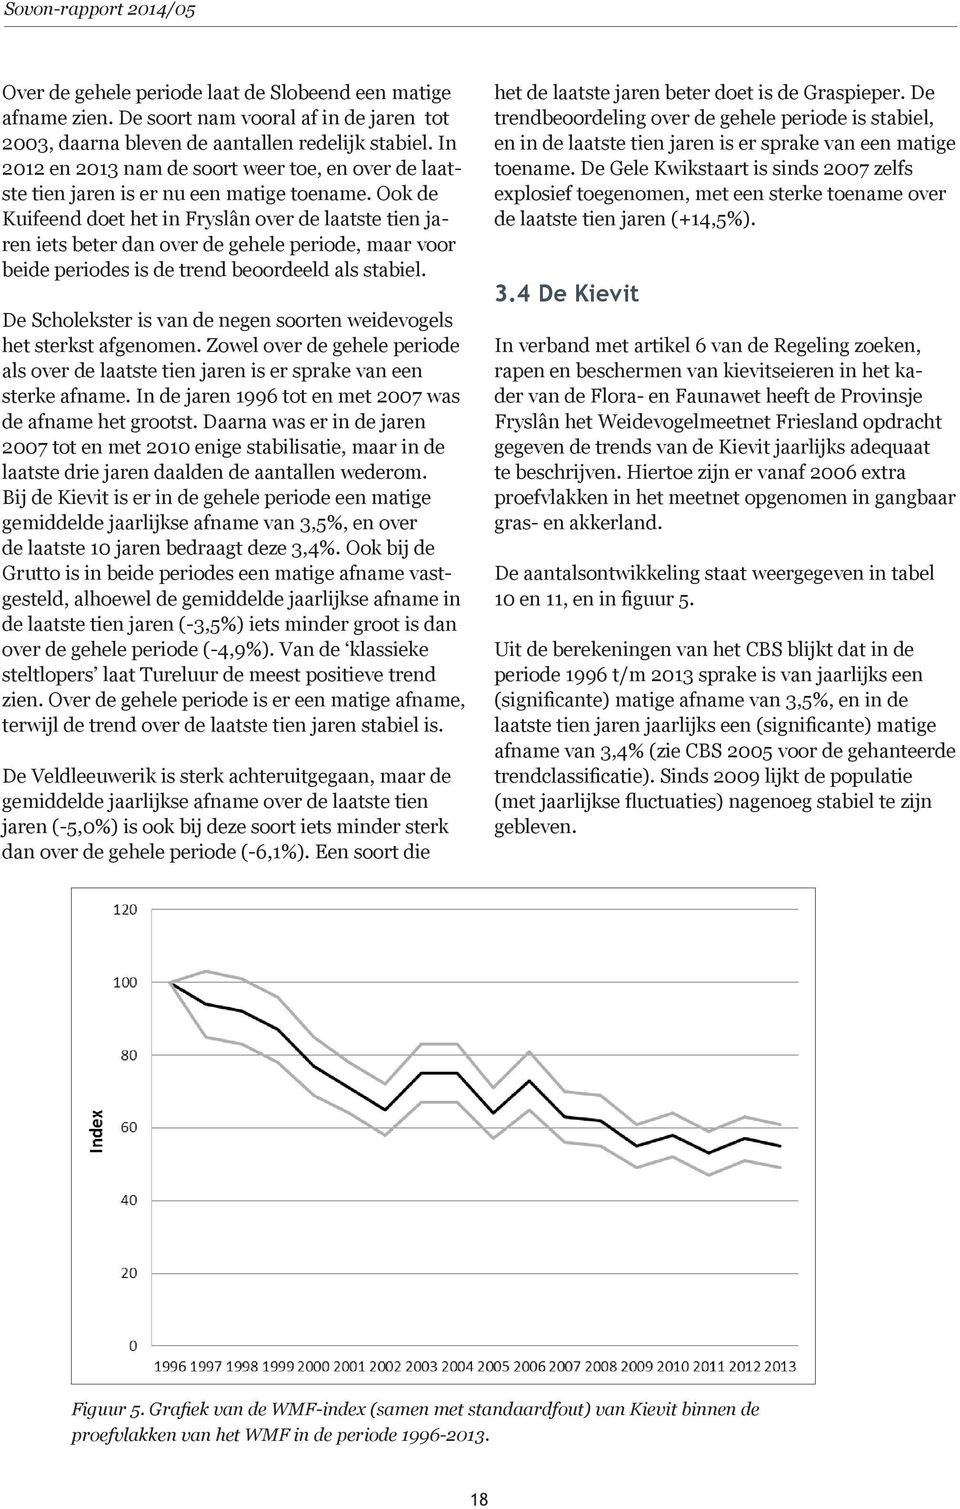 Ook de Kuifeend doet het in Fryslân over de laatste tien jaren iets beter dan over de gehele periode, maar voor beide periodes is de trend beoordeeld als stabiel.